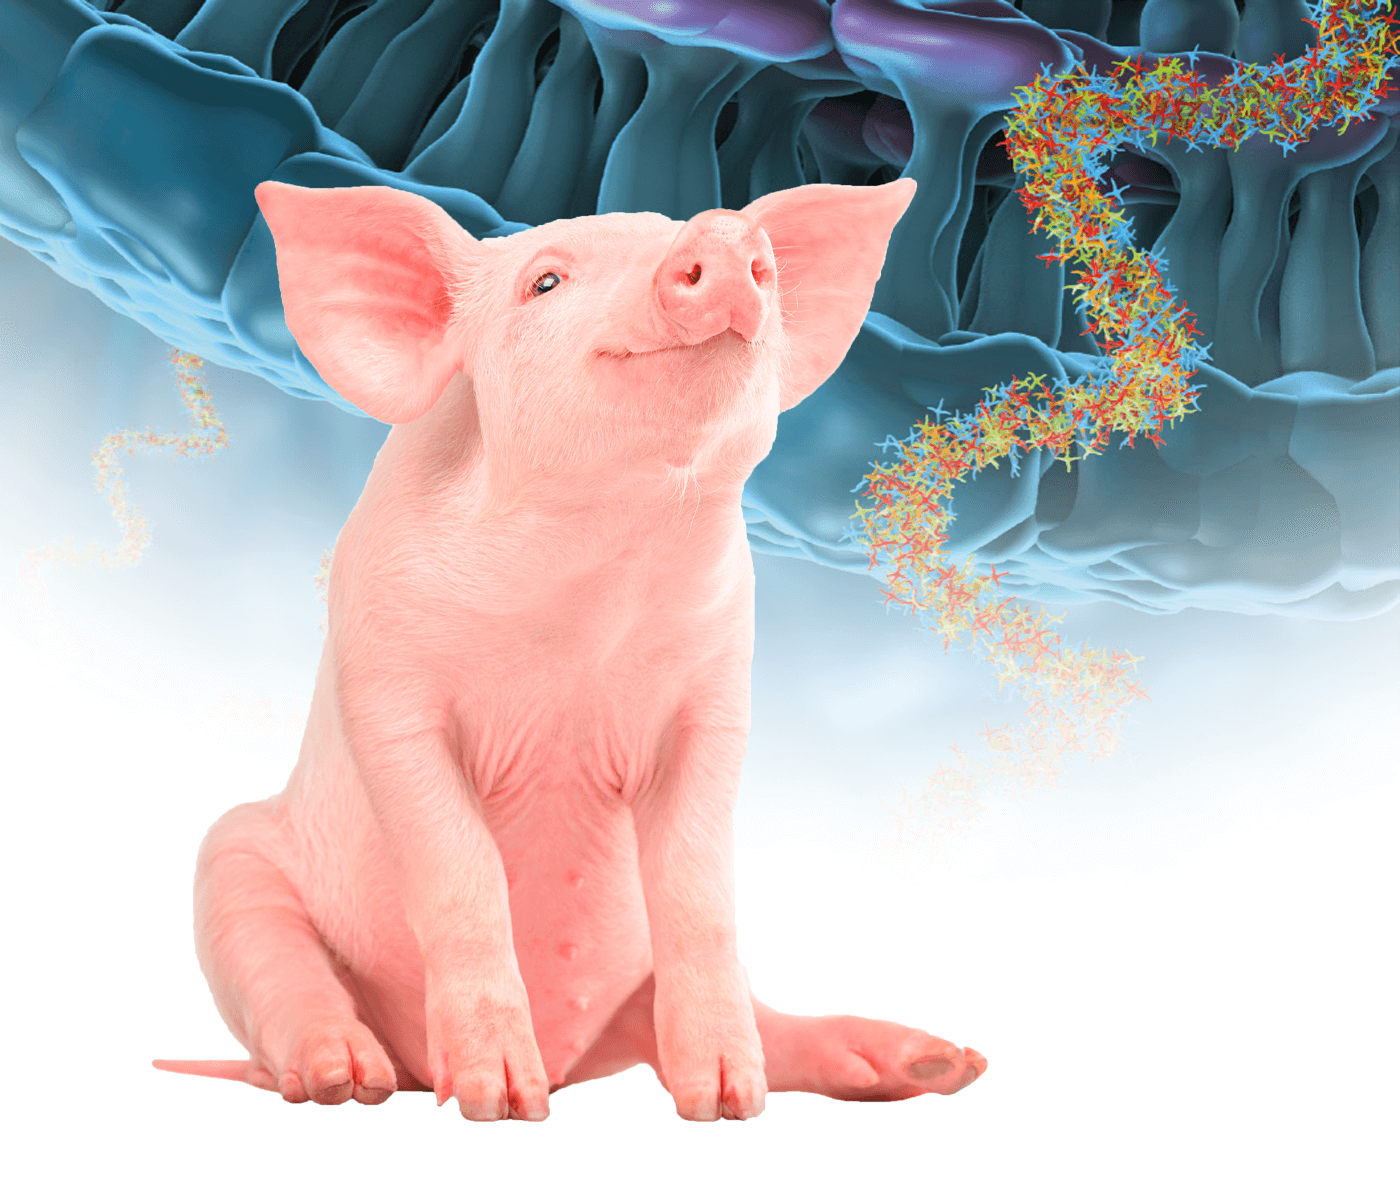 Uso racional de antimicrobianos en porcino: Antimicrobianos que actúan inhibiendo la síntesis de proteínas – Parte II